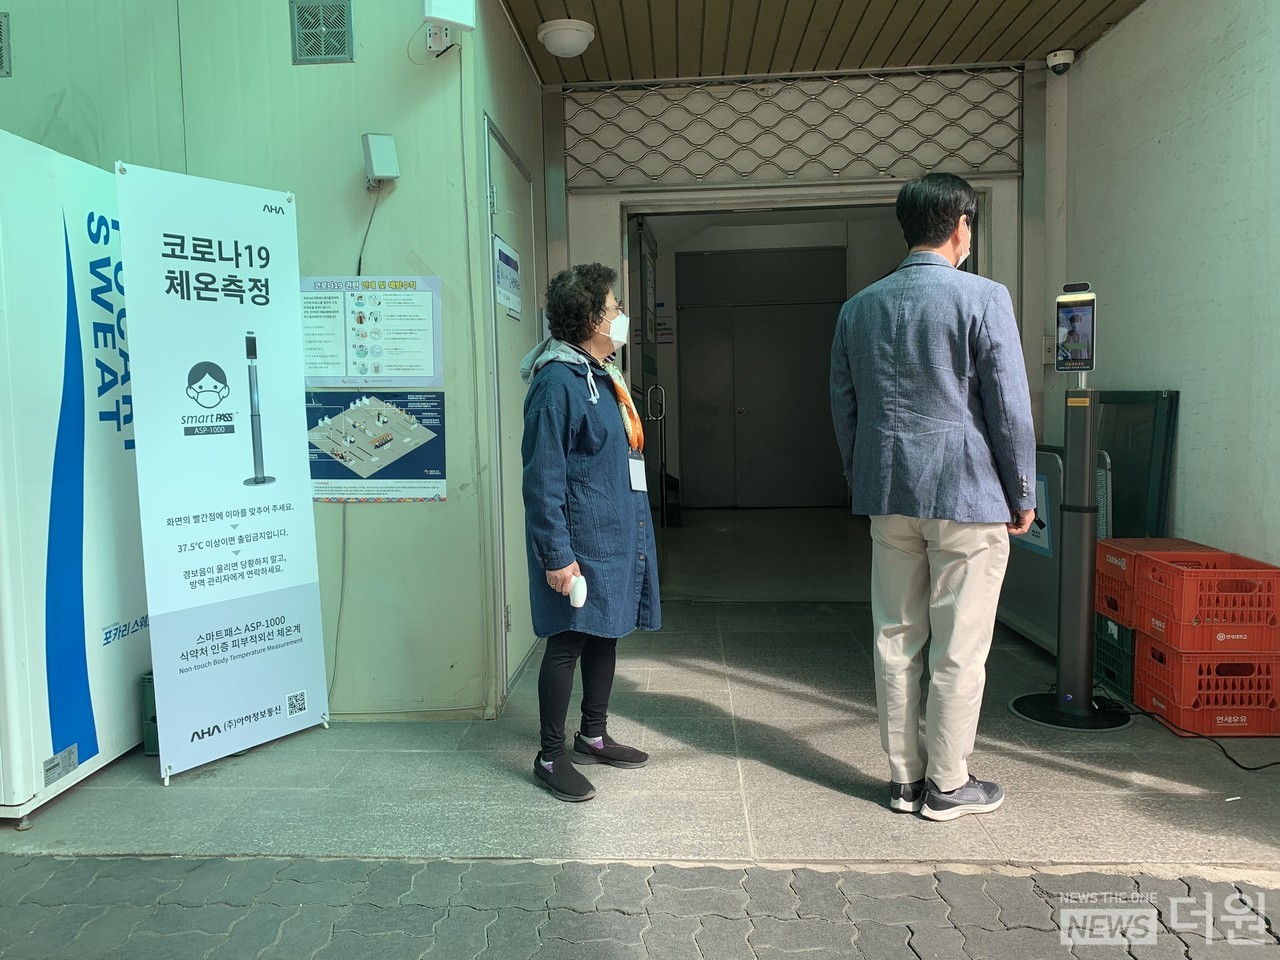 2일 서울 종로구청에 마련된 사전투표소 입구에서 한 시민이 코로나19 체온측정을 하고 있다./사진=남유진 기자